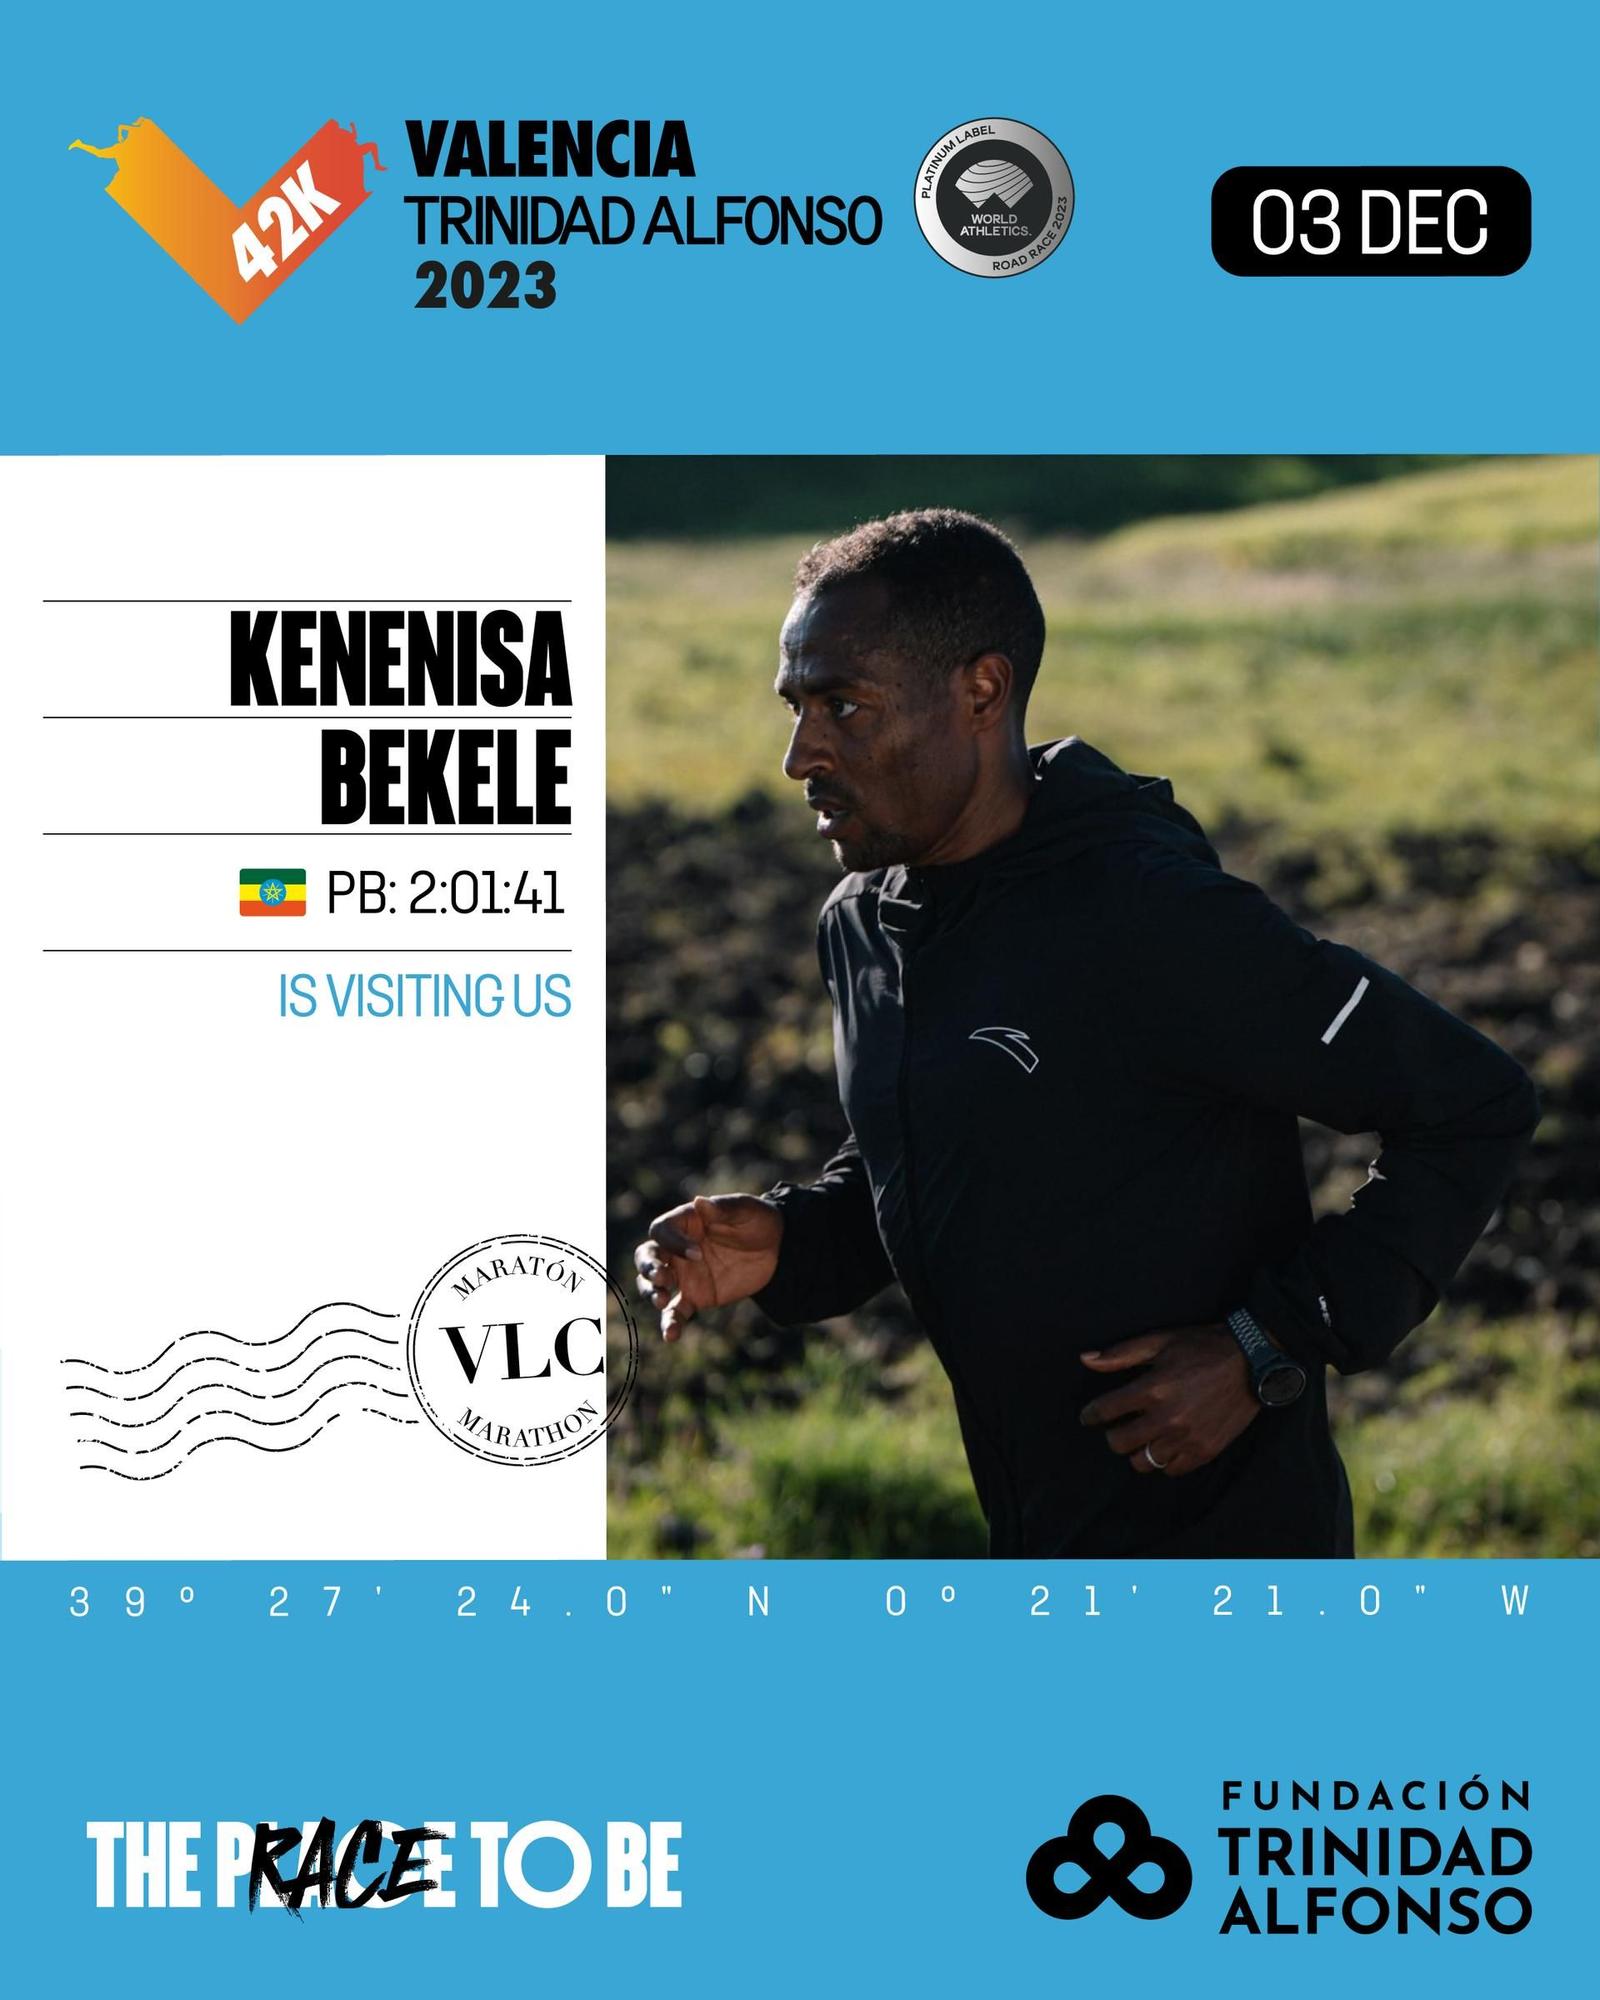 Kenenisa Bekele correrá el Maratón Valencia Trinidad Alfonso el próximo 3 de diciembre.